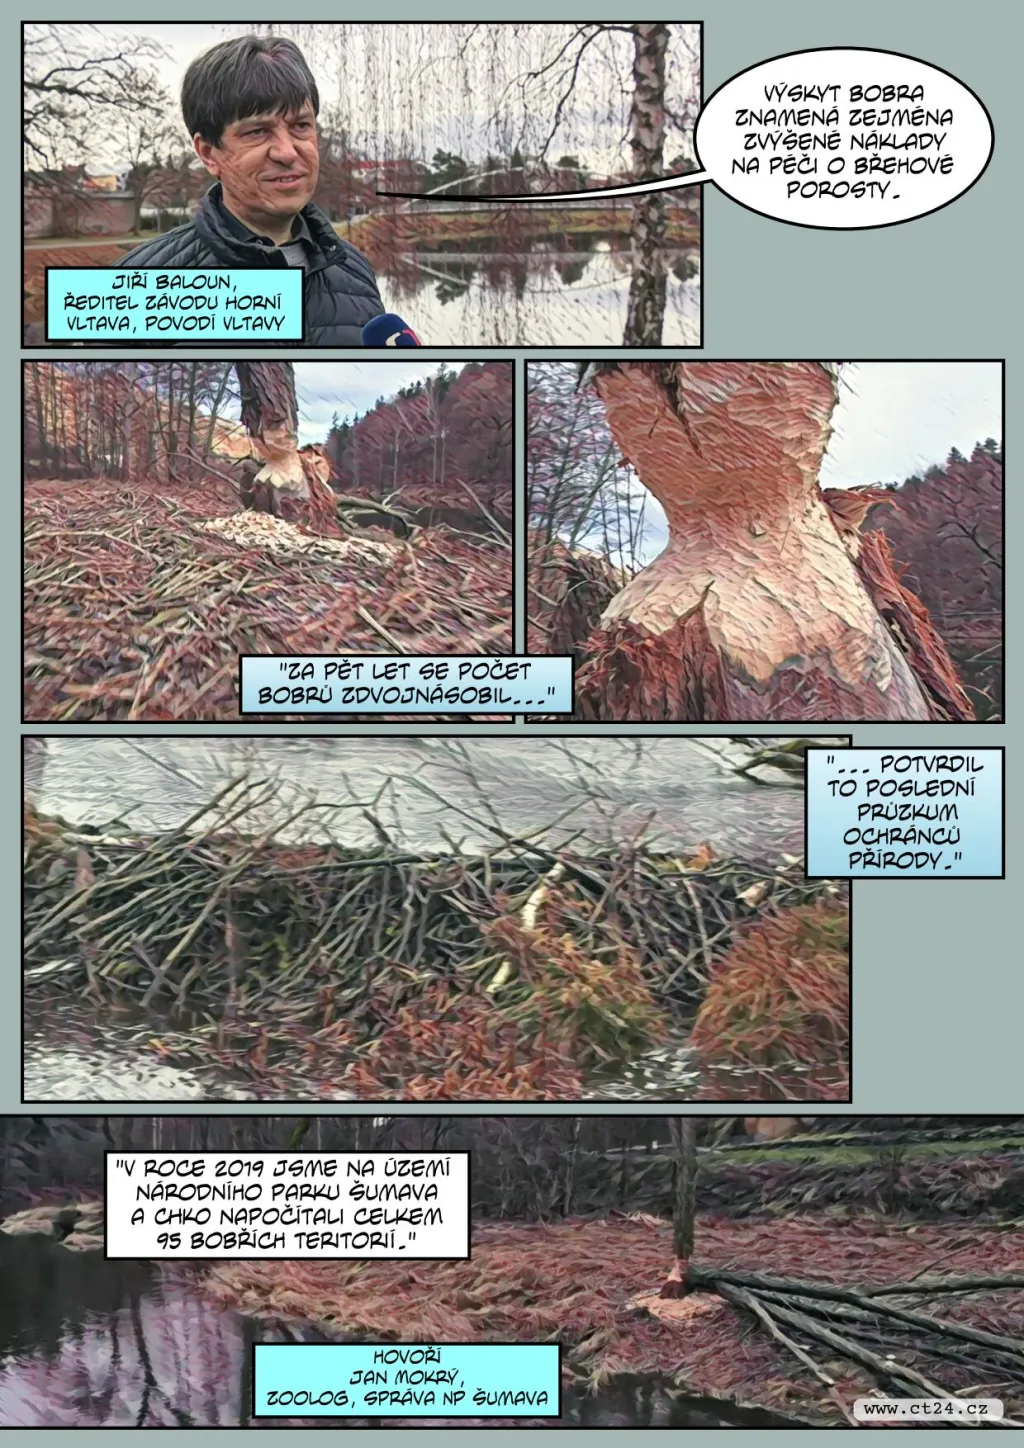 Povodí Vltavy se potýká s bobry